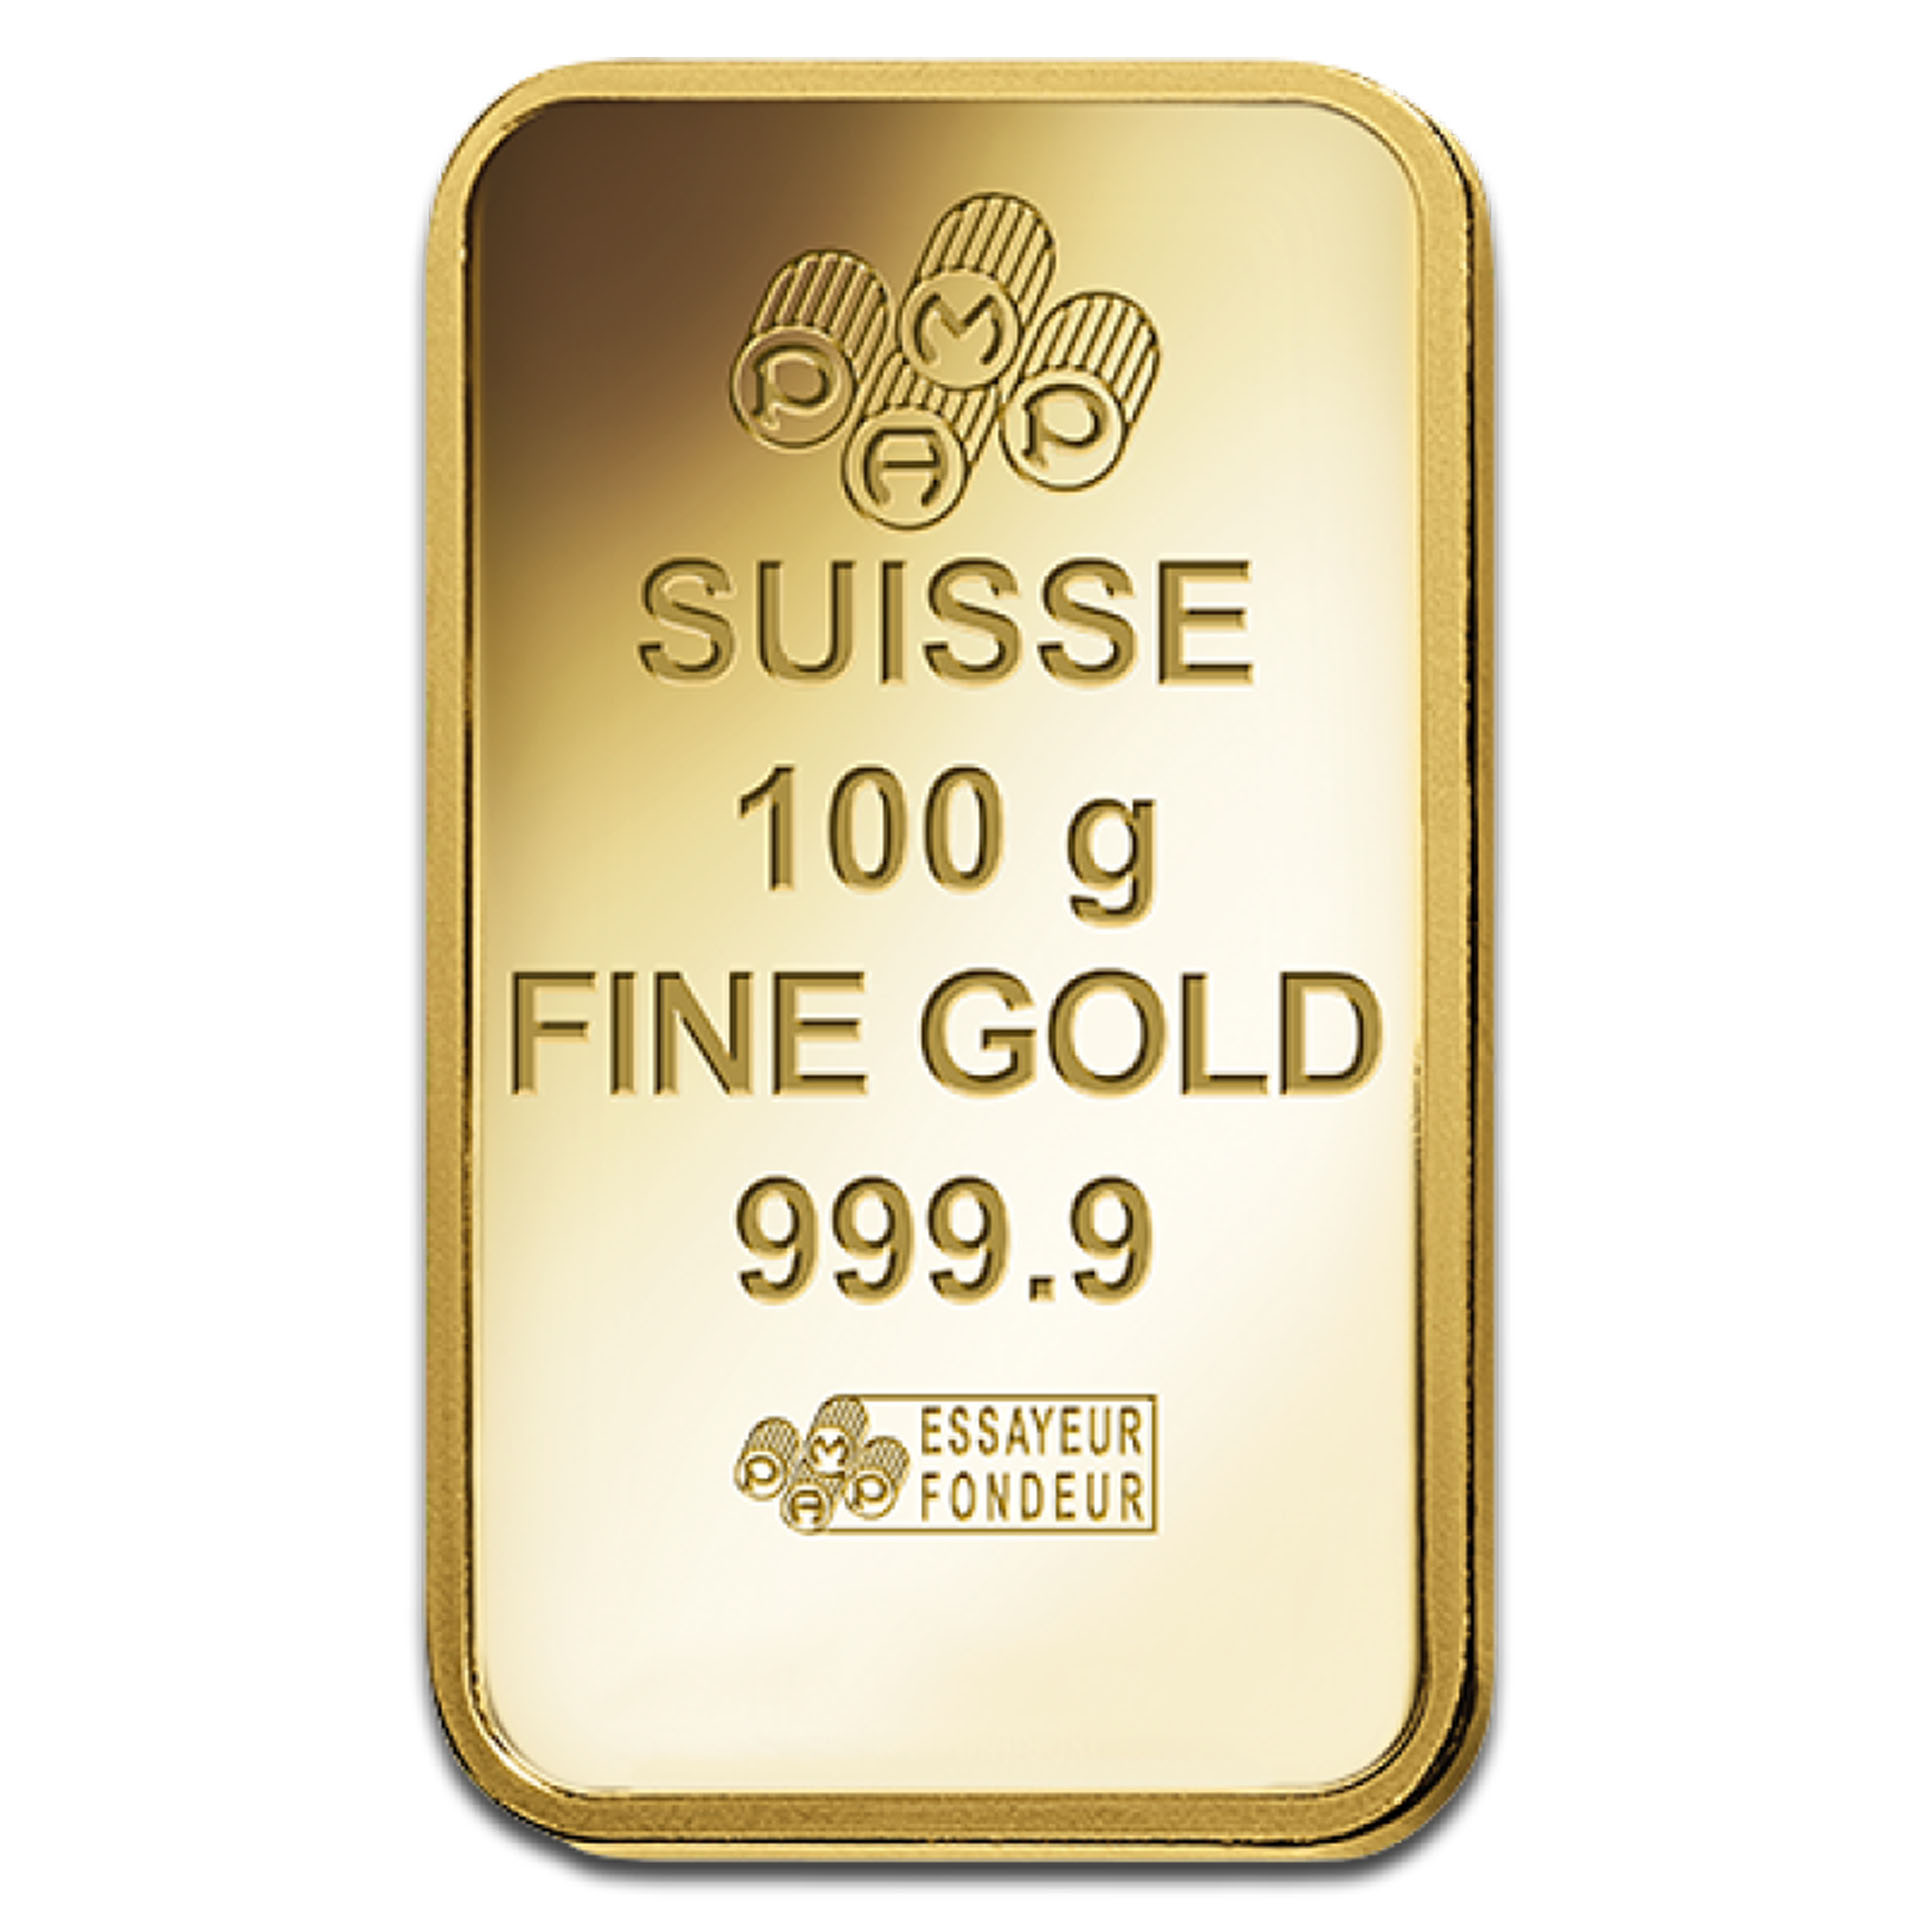 Золото 999.9 пробы. Suisse 10g Fine Silver 999.9 белое золото. Suisse 10g Fine Gold 999.9 кулон. 999.9 Fine Gold кулон серебро. Fine Gold 999.9 uzb.